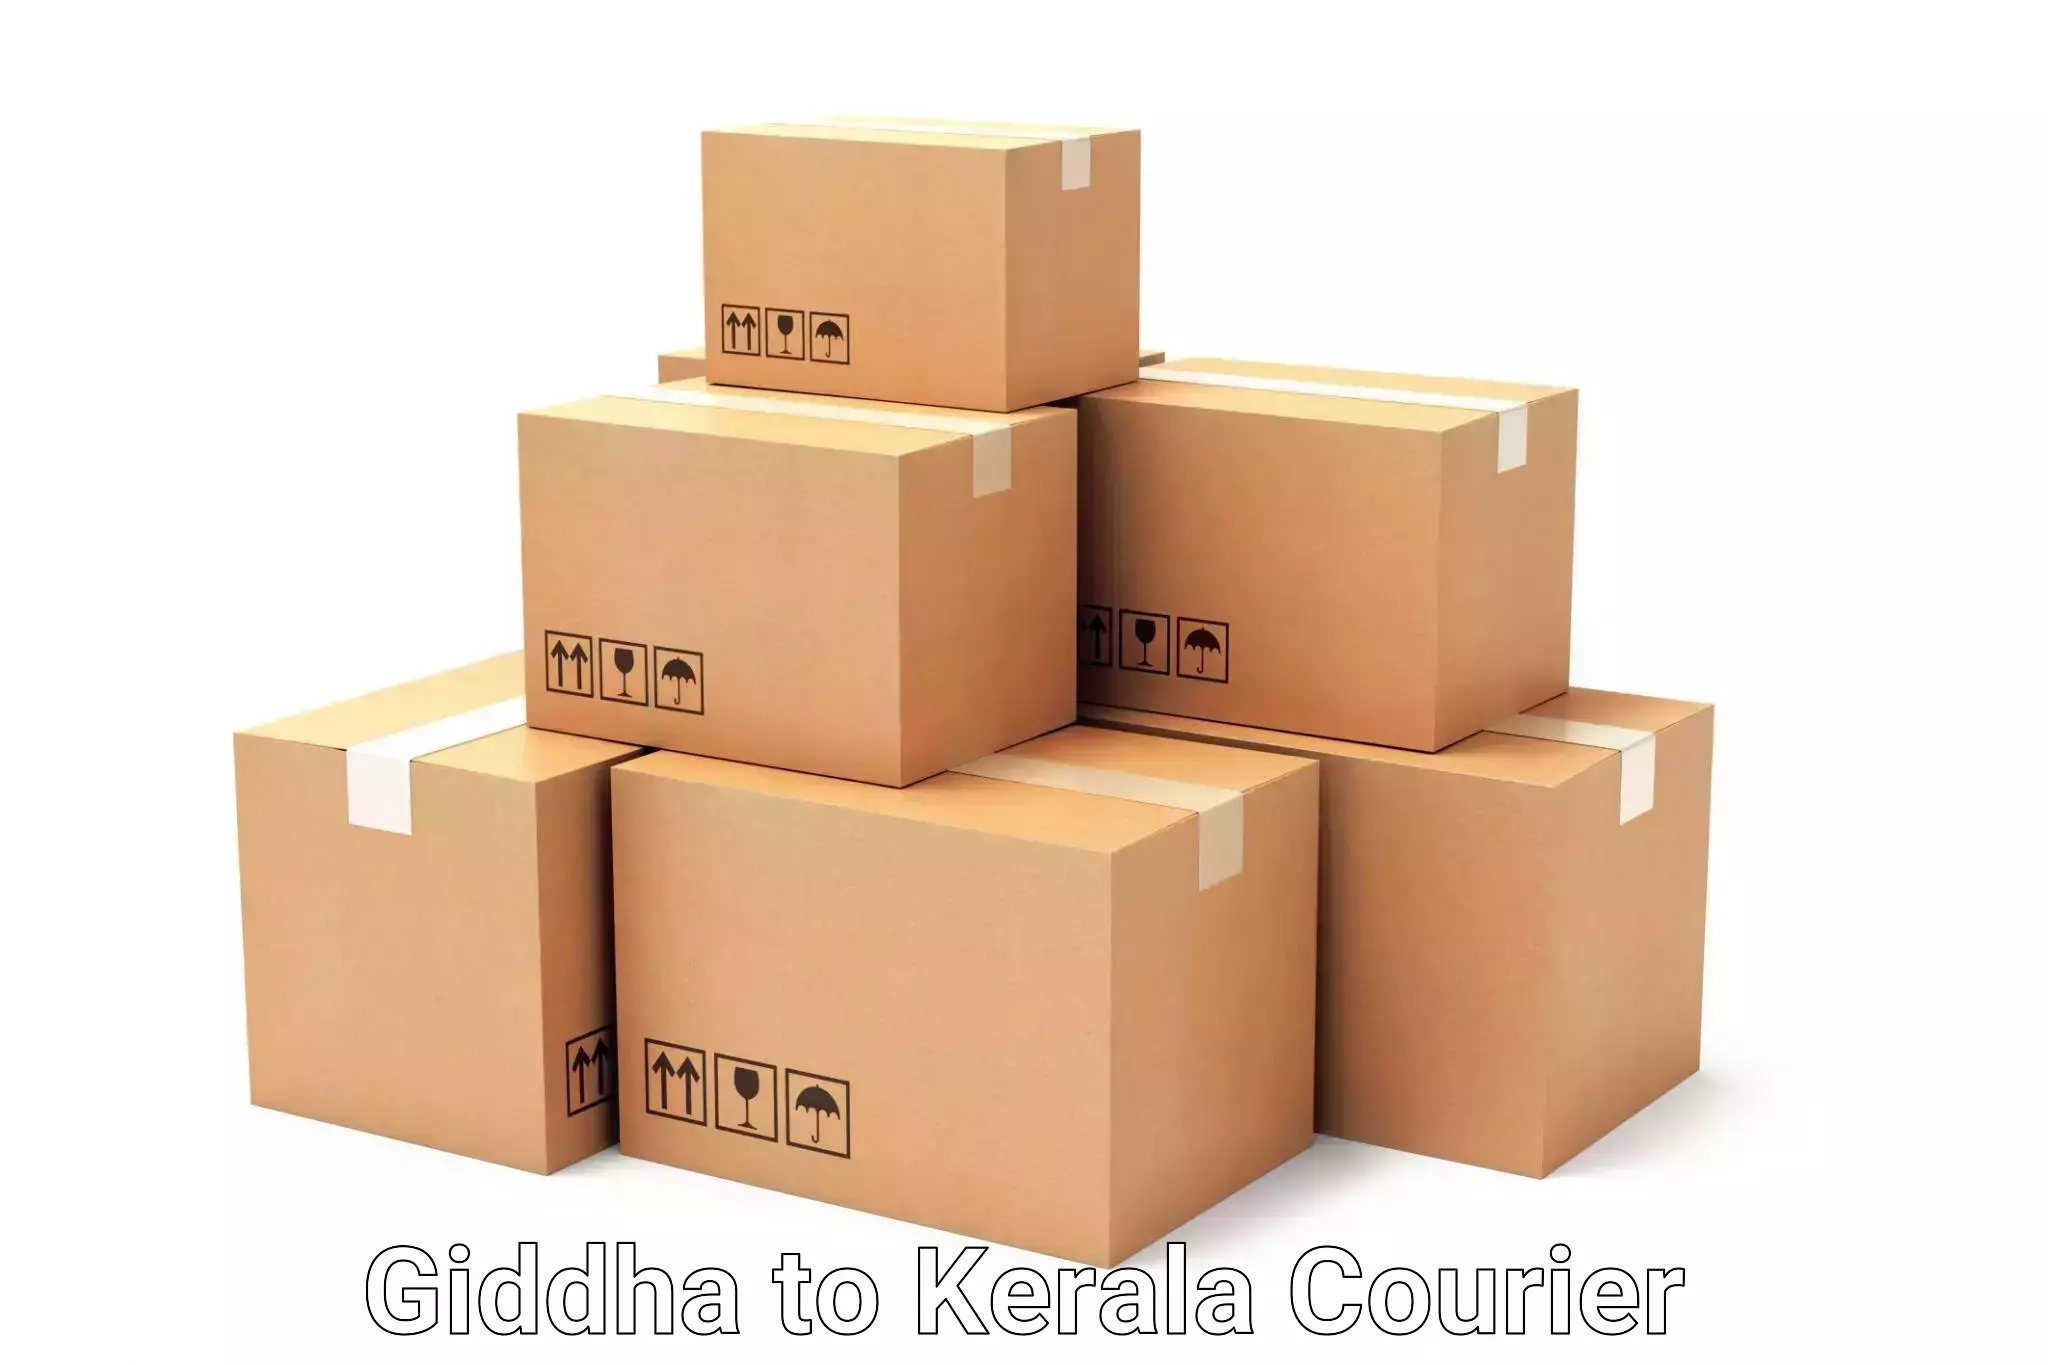 Regional luggage transport Giddha to Cochin Port Kochi